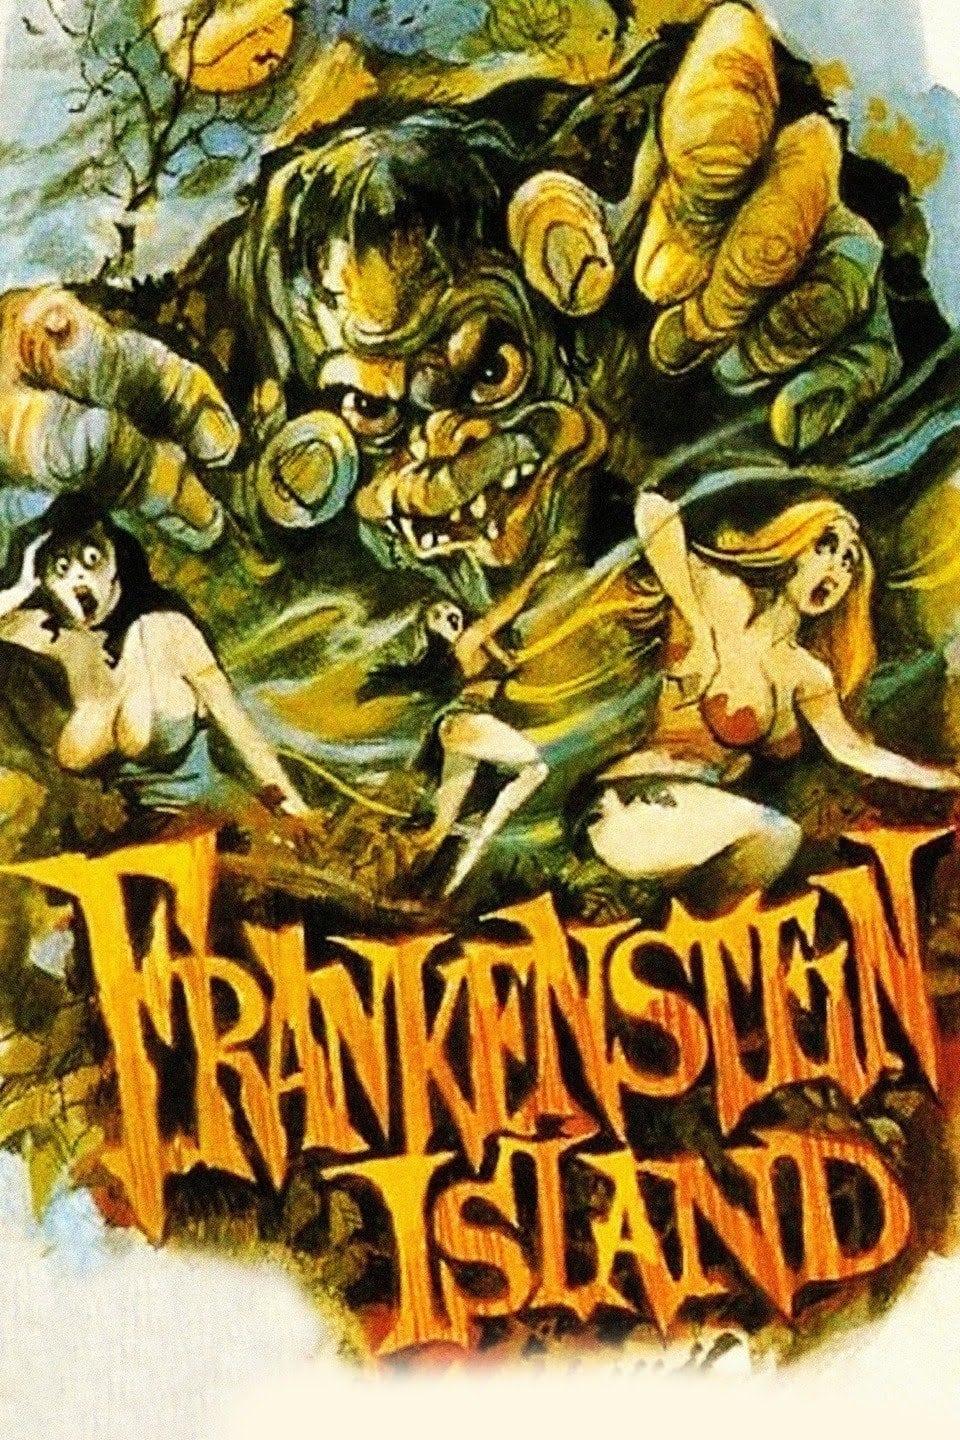 Frankenstein Island poster